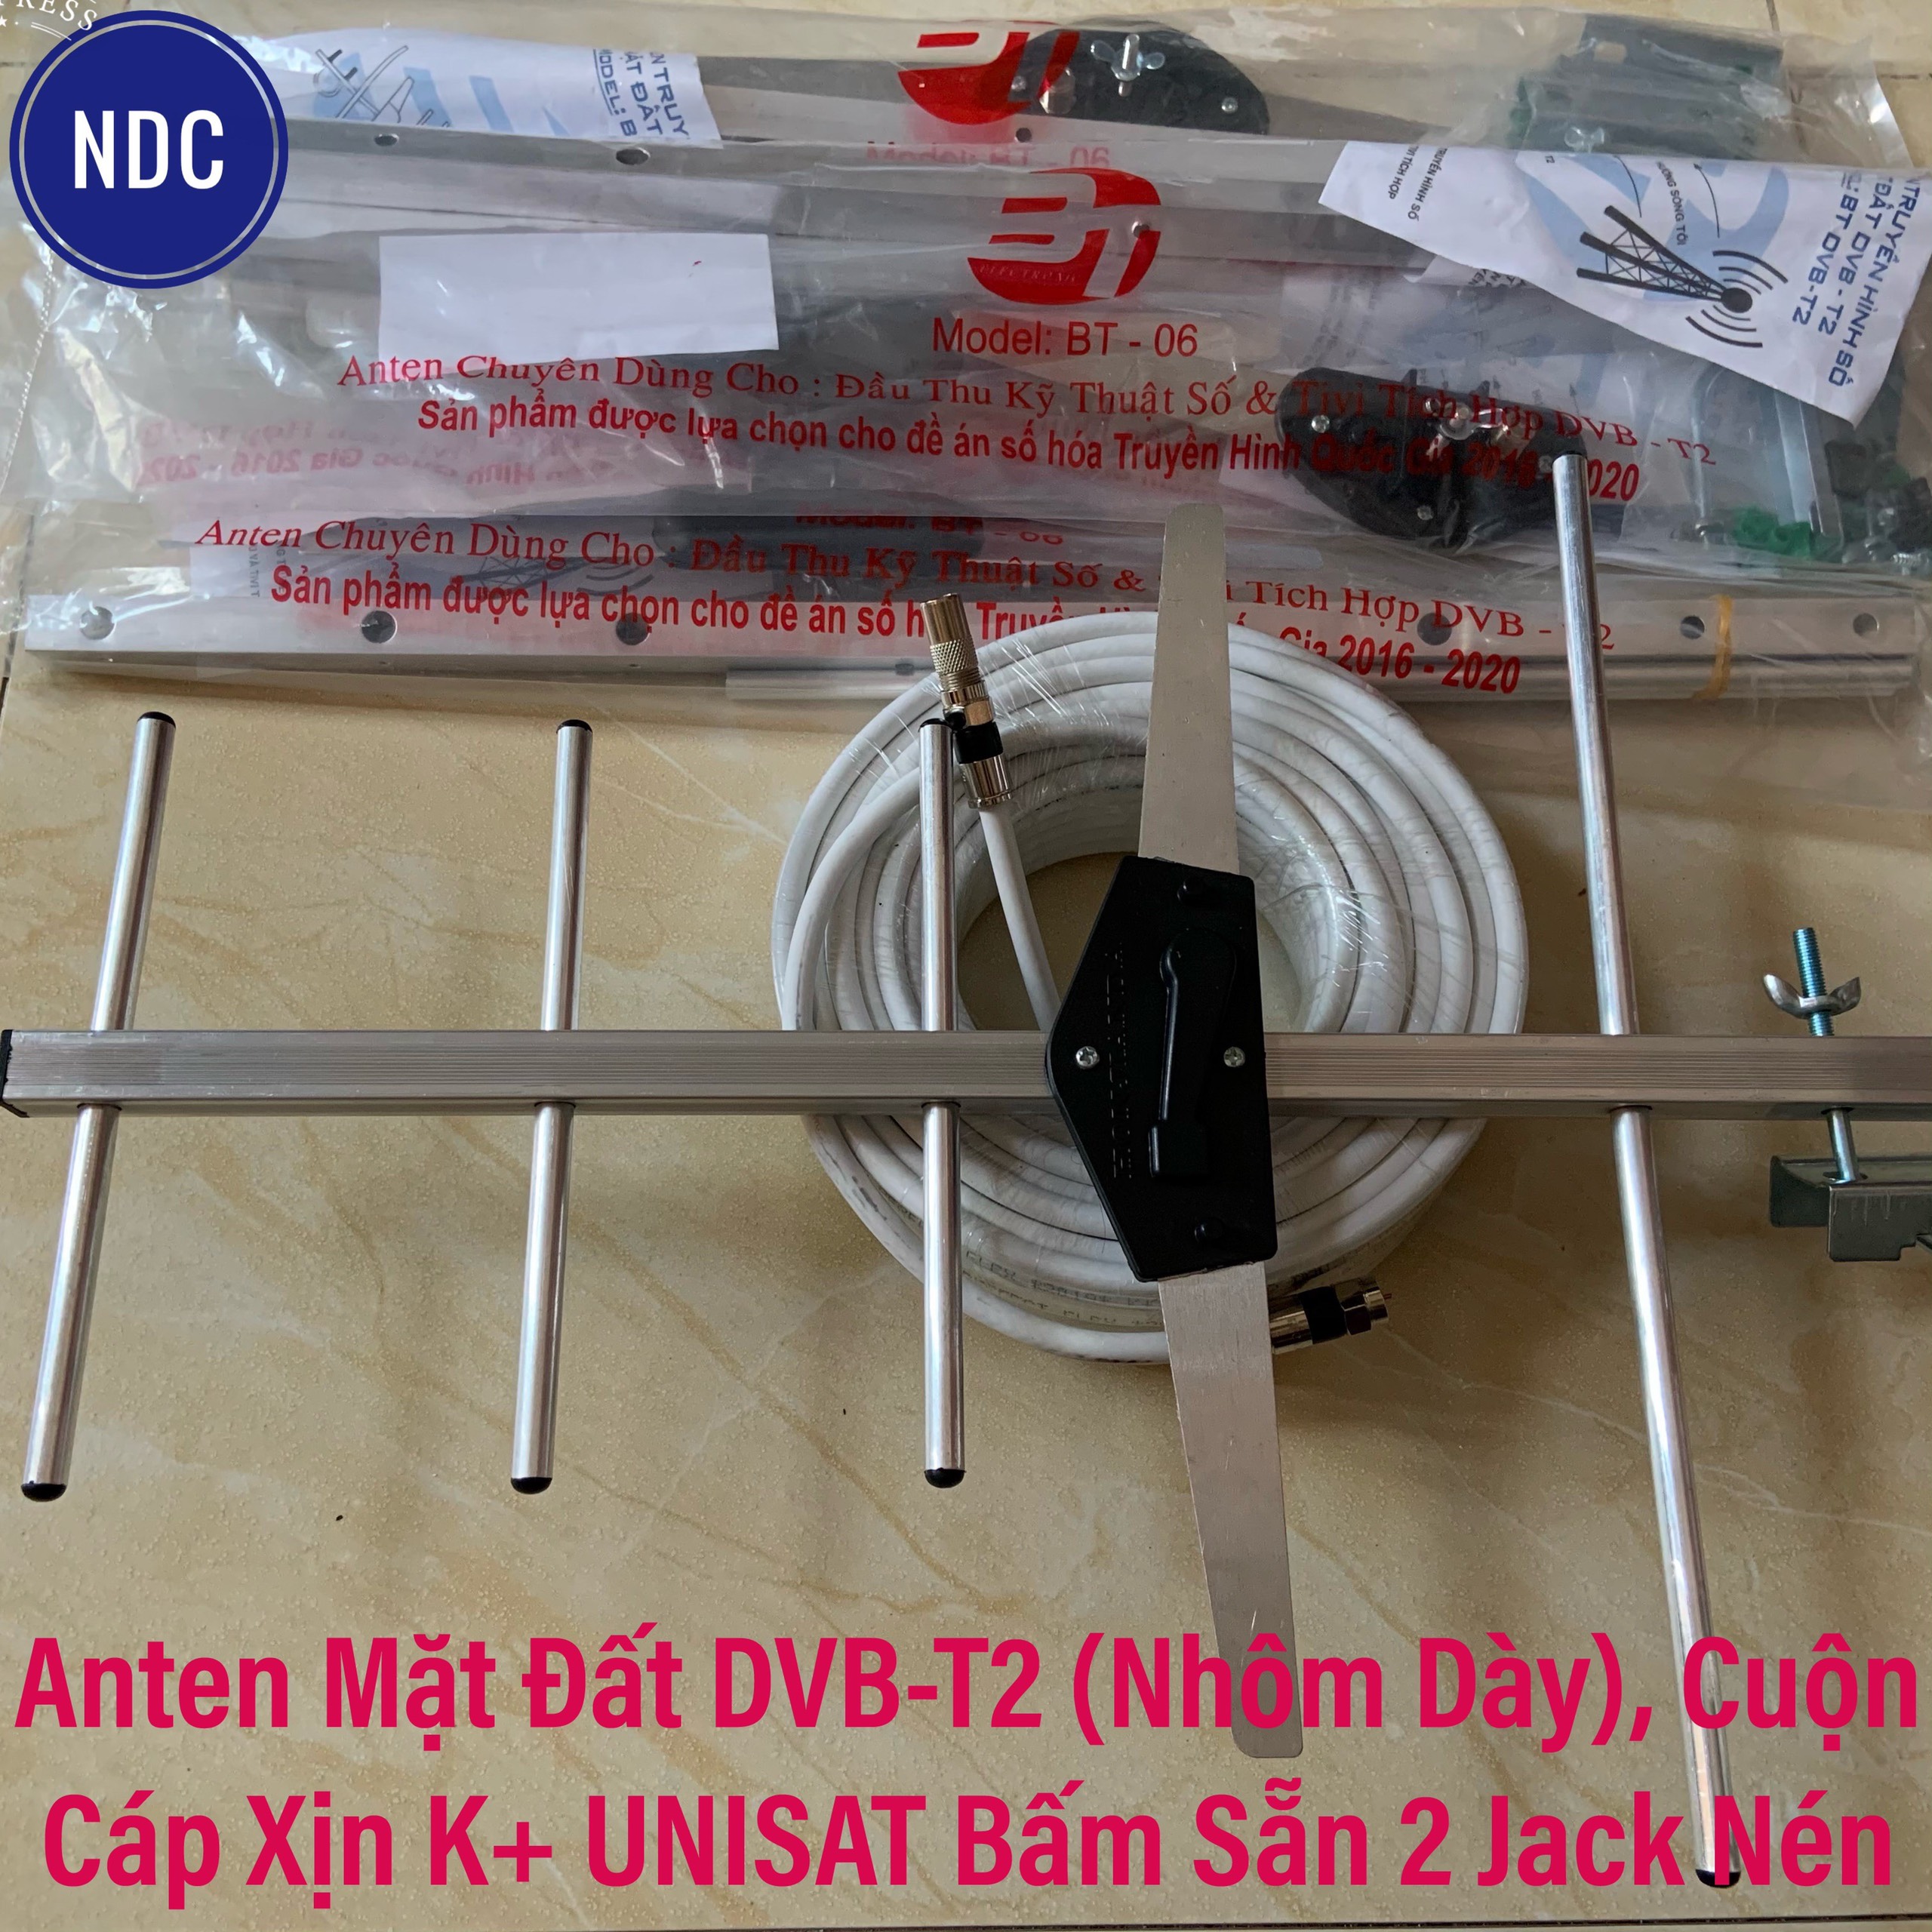 Anten Mặt Đất DVB-T2 (Nhôm Dày), Cuộn Cáp Xịn K+ AVG Bấm Sẵn 2 Jack Xịn